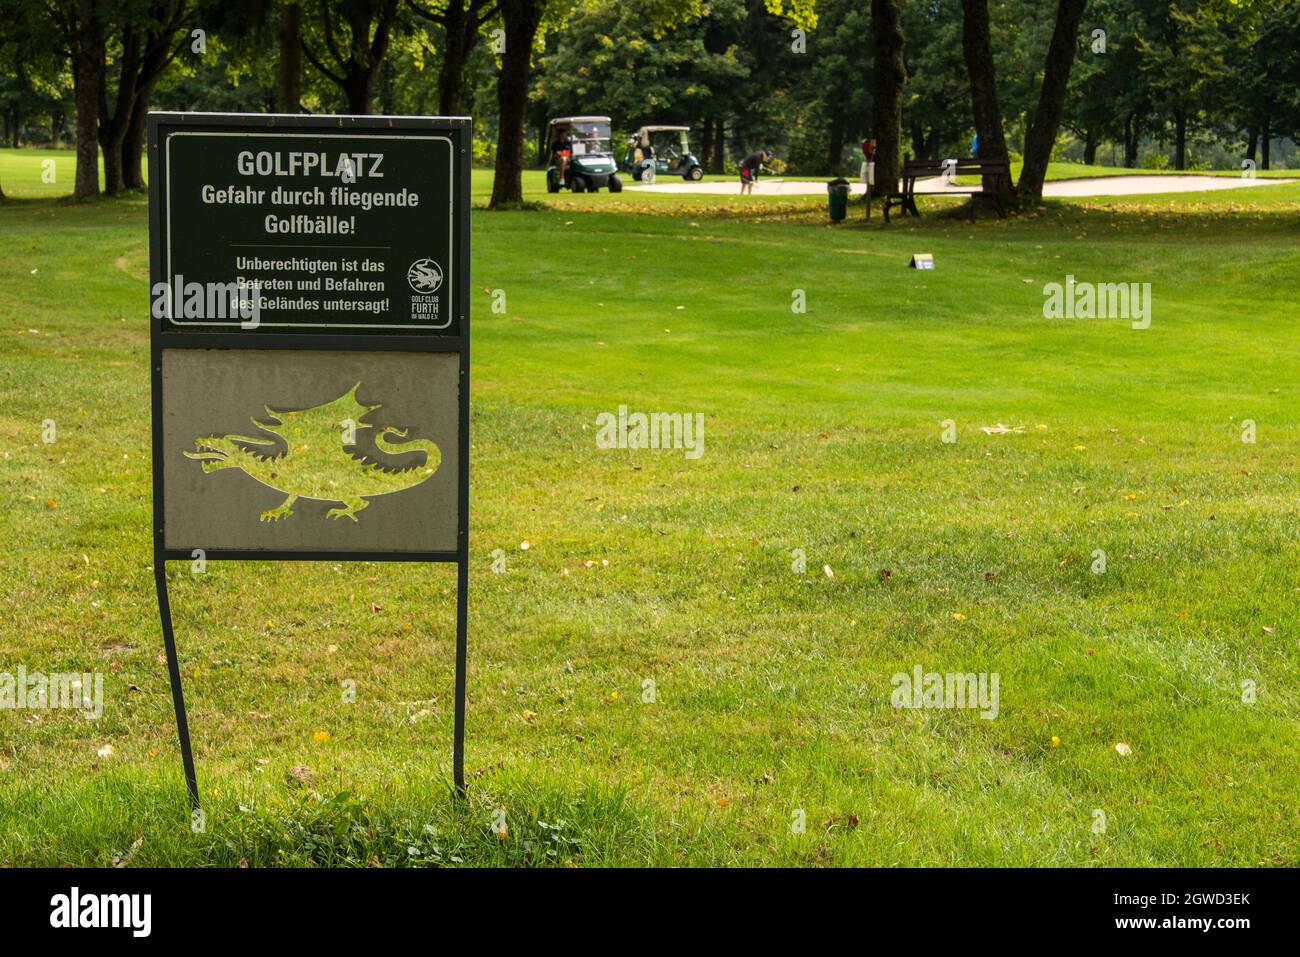 Golfplatz Banque d'image et photos - Alamy